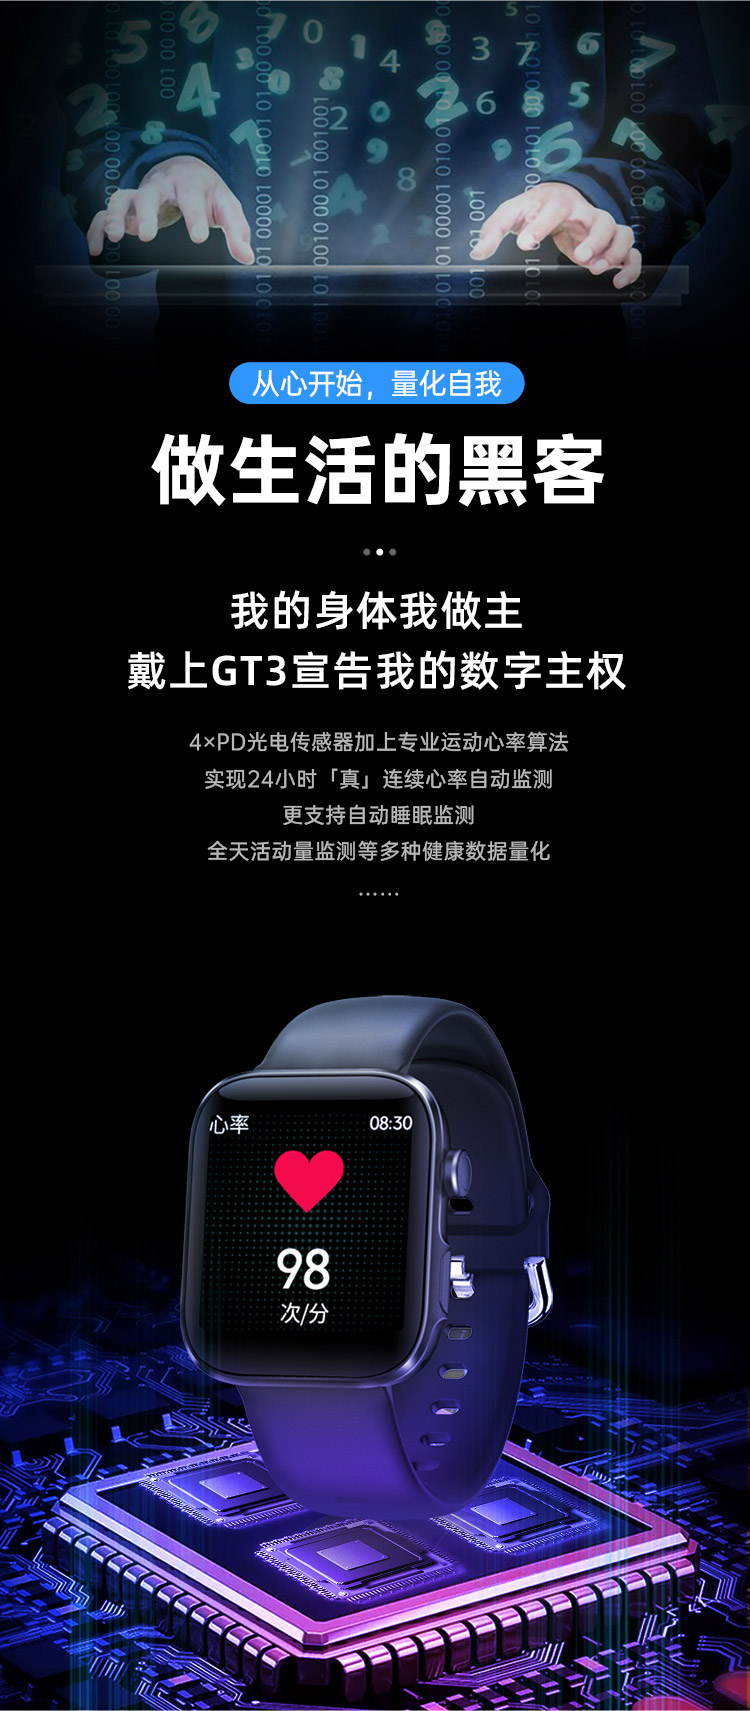 物果智家 2021新品 GT3智能手表1.54寸大屏自定义蓝牙通话体温心率血压监测 手表